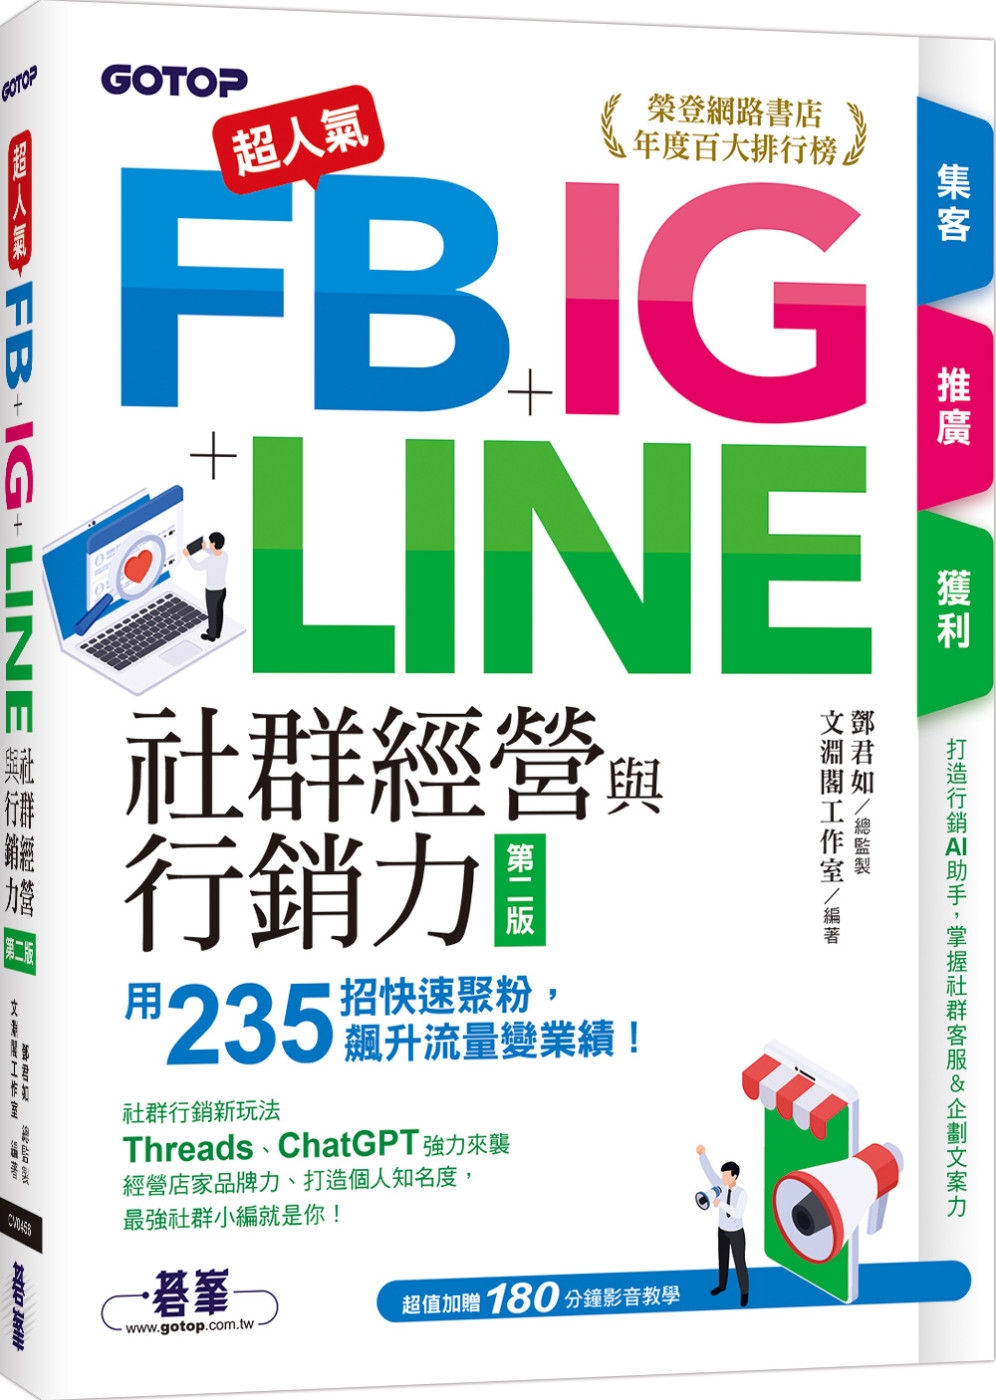 超人氣FB+IG+LINE社群經營與行銷力(第二版)：用23...